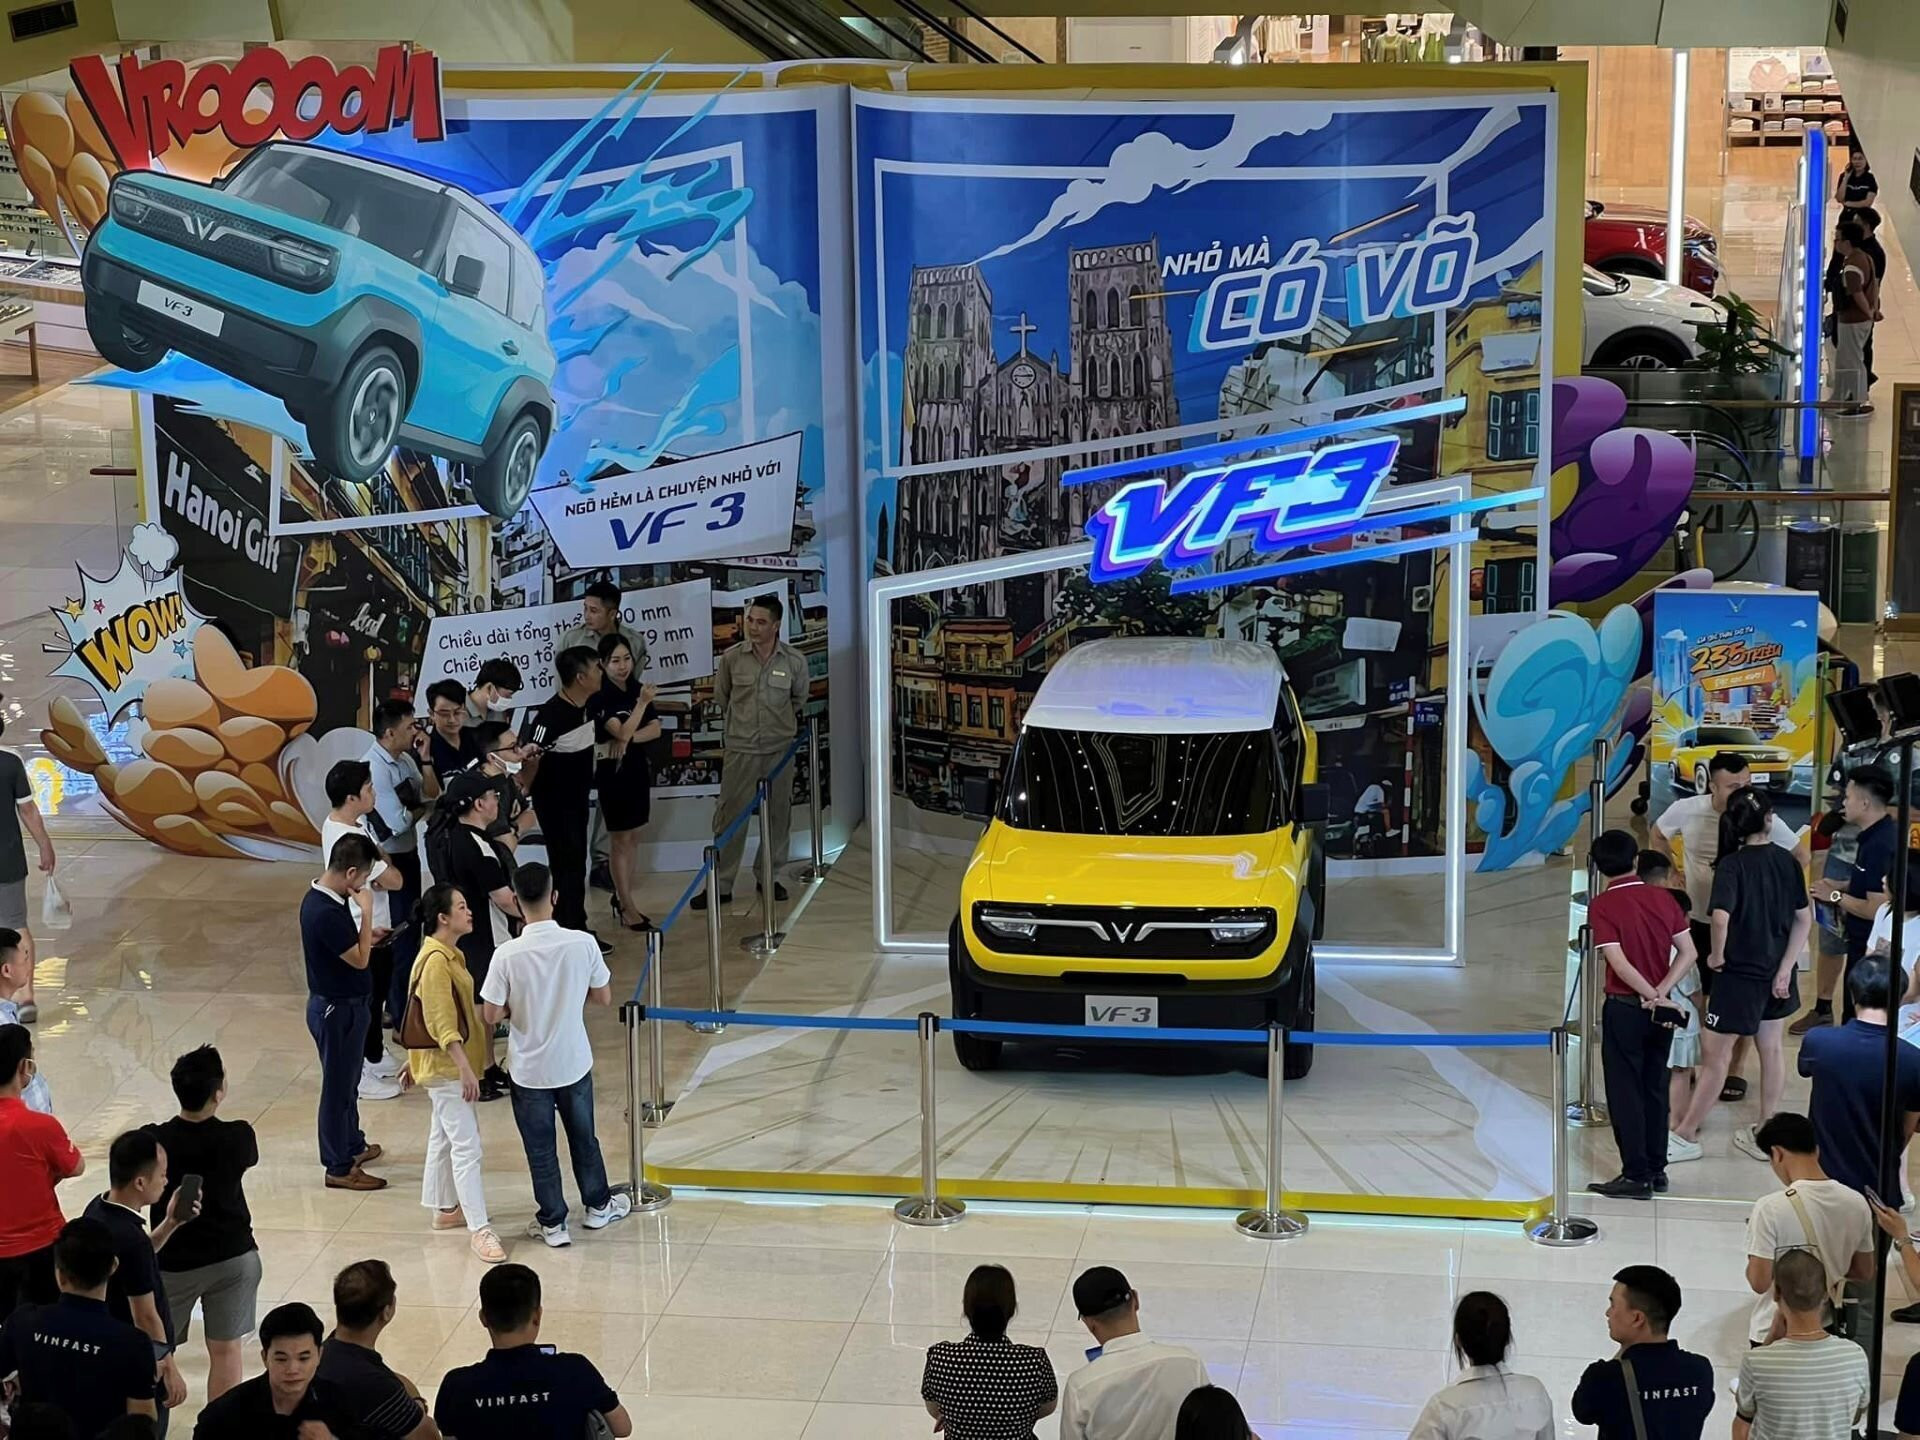 Với gần 28.000 cọc chỉ trong 66 giờ, mẫu xe VF 3 trở thành “hiện tượng” trên thị trường ô tô Việt (Hình ảnh tại Vincom Center Trần Duy Hưng, Hà Nội).